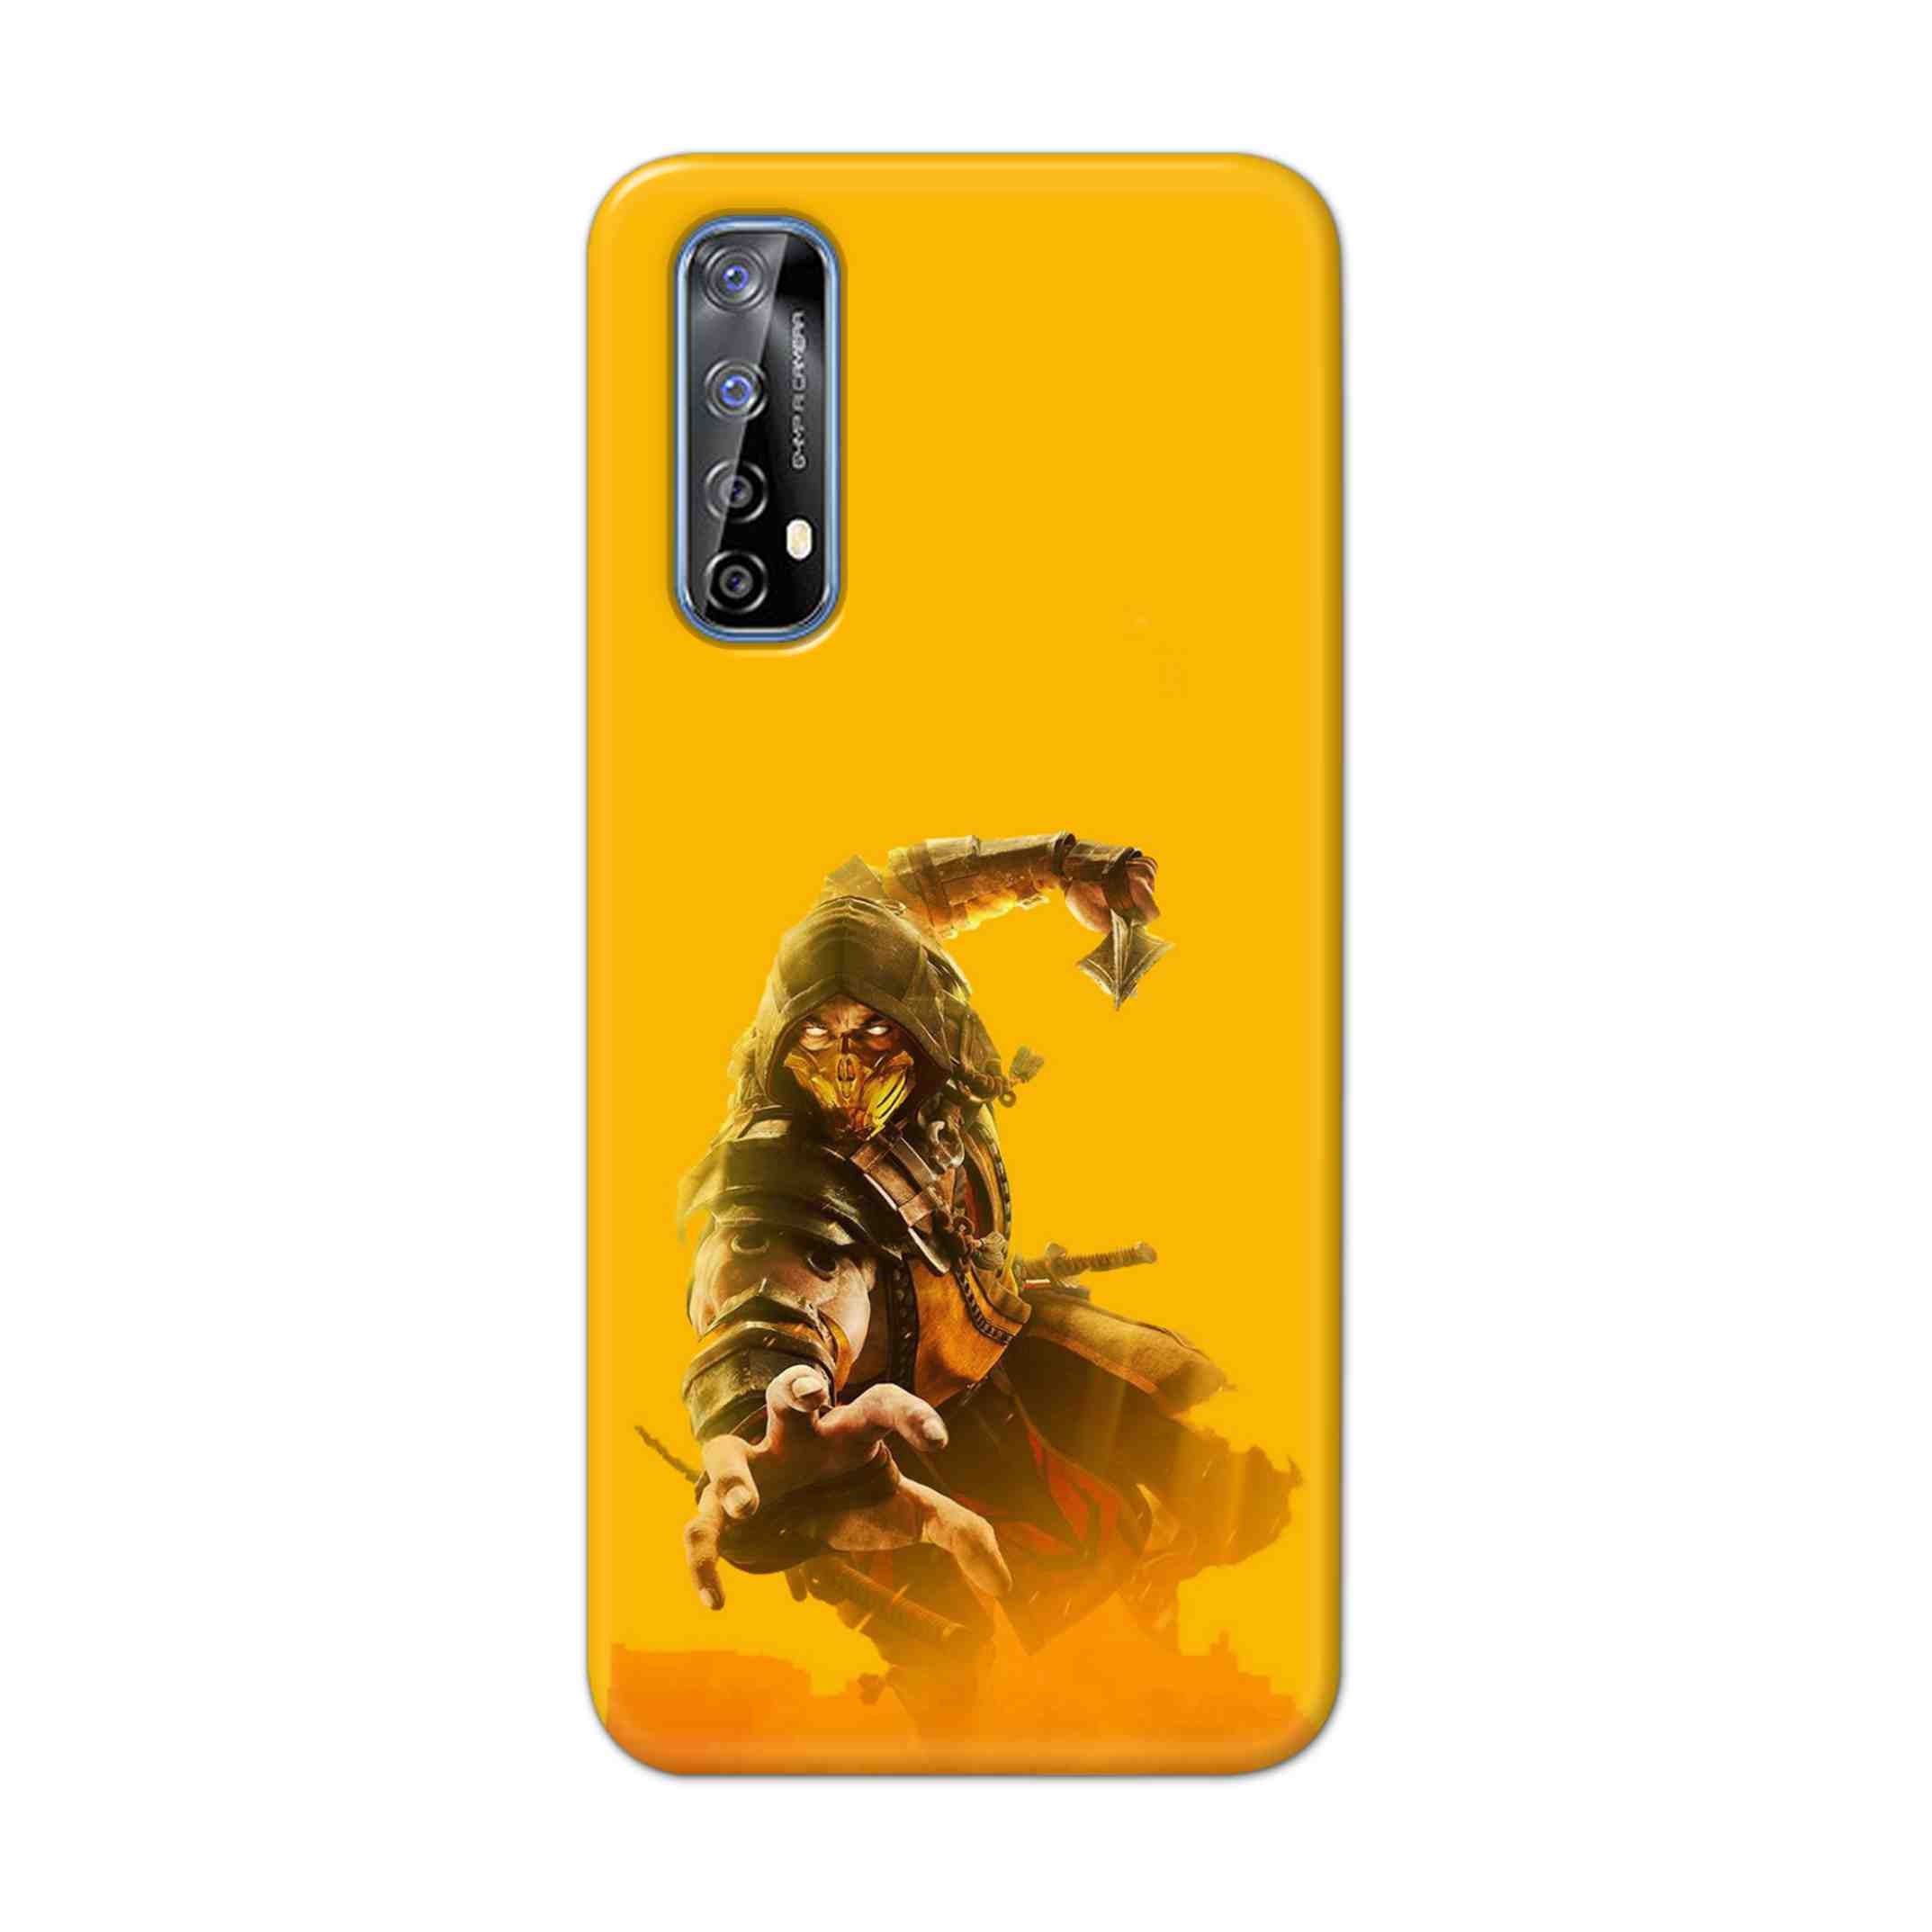 Buy Mortal Kombat Hard Back Mobile Phone Case Cover For Realme 7 Online